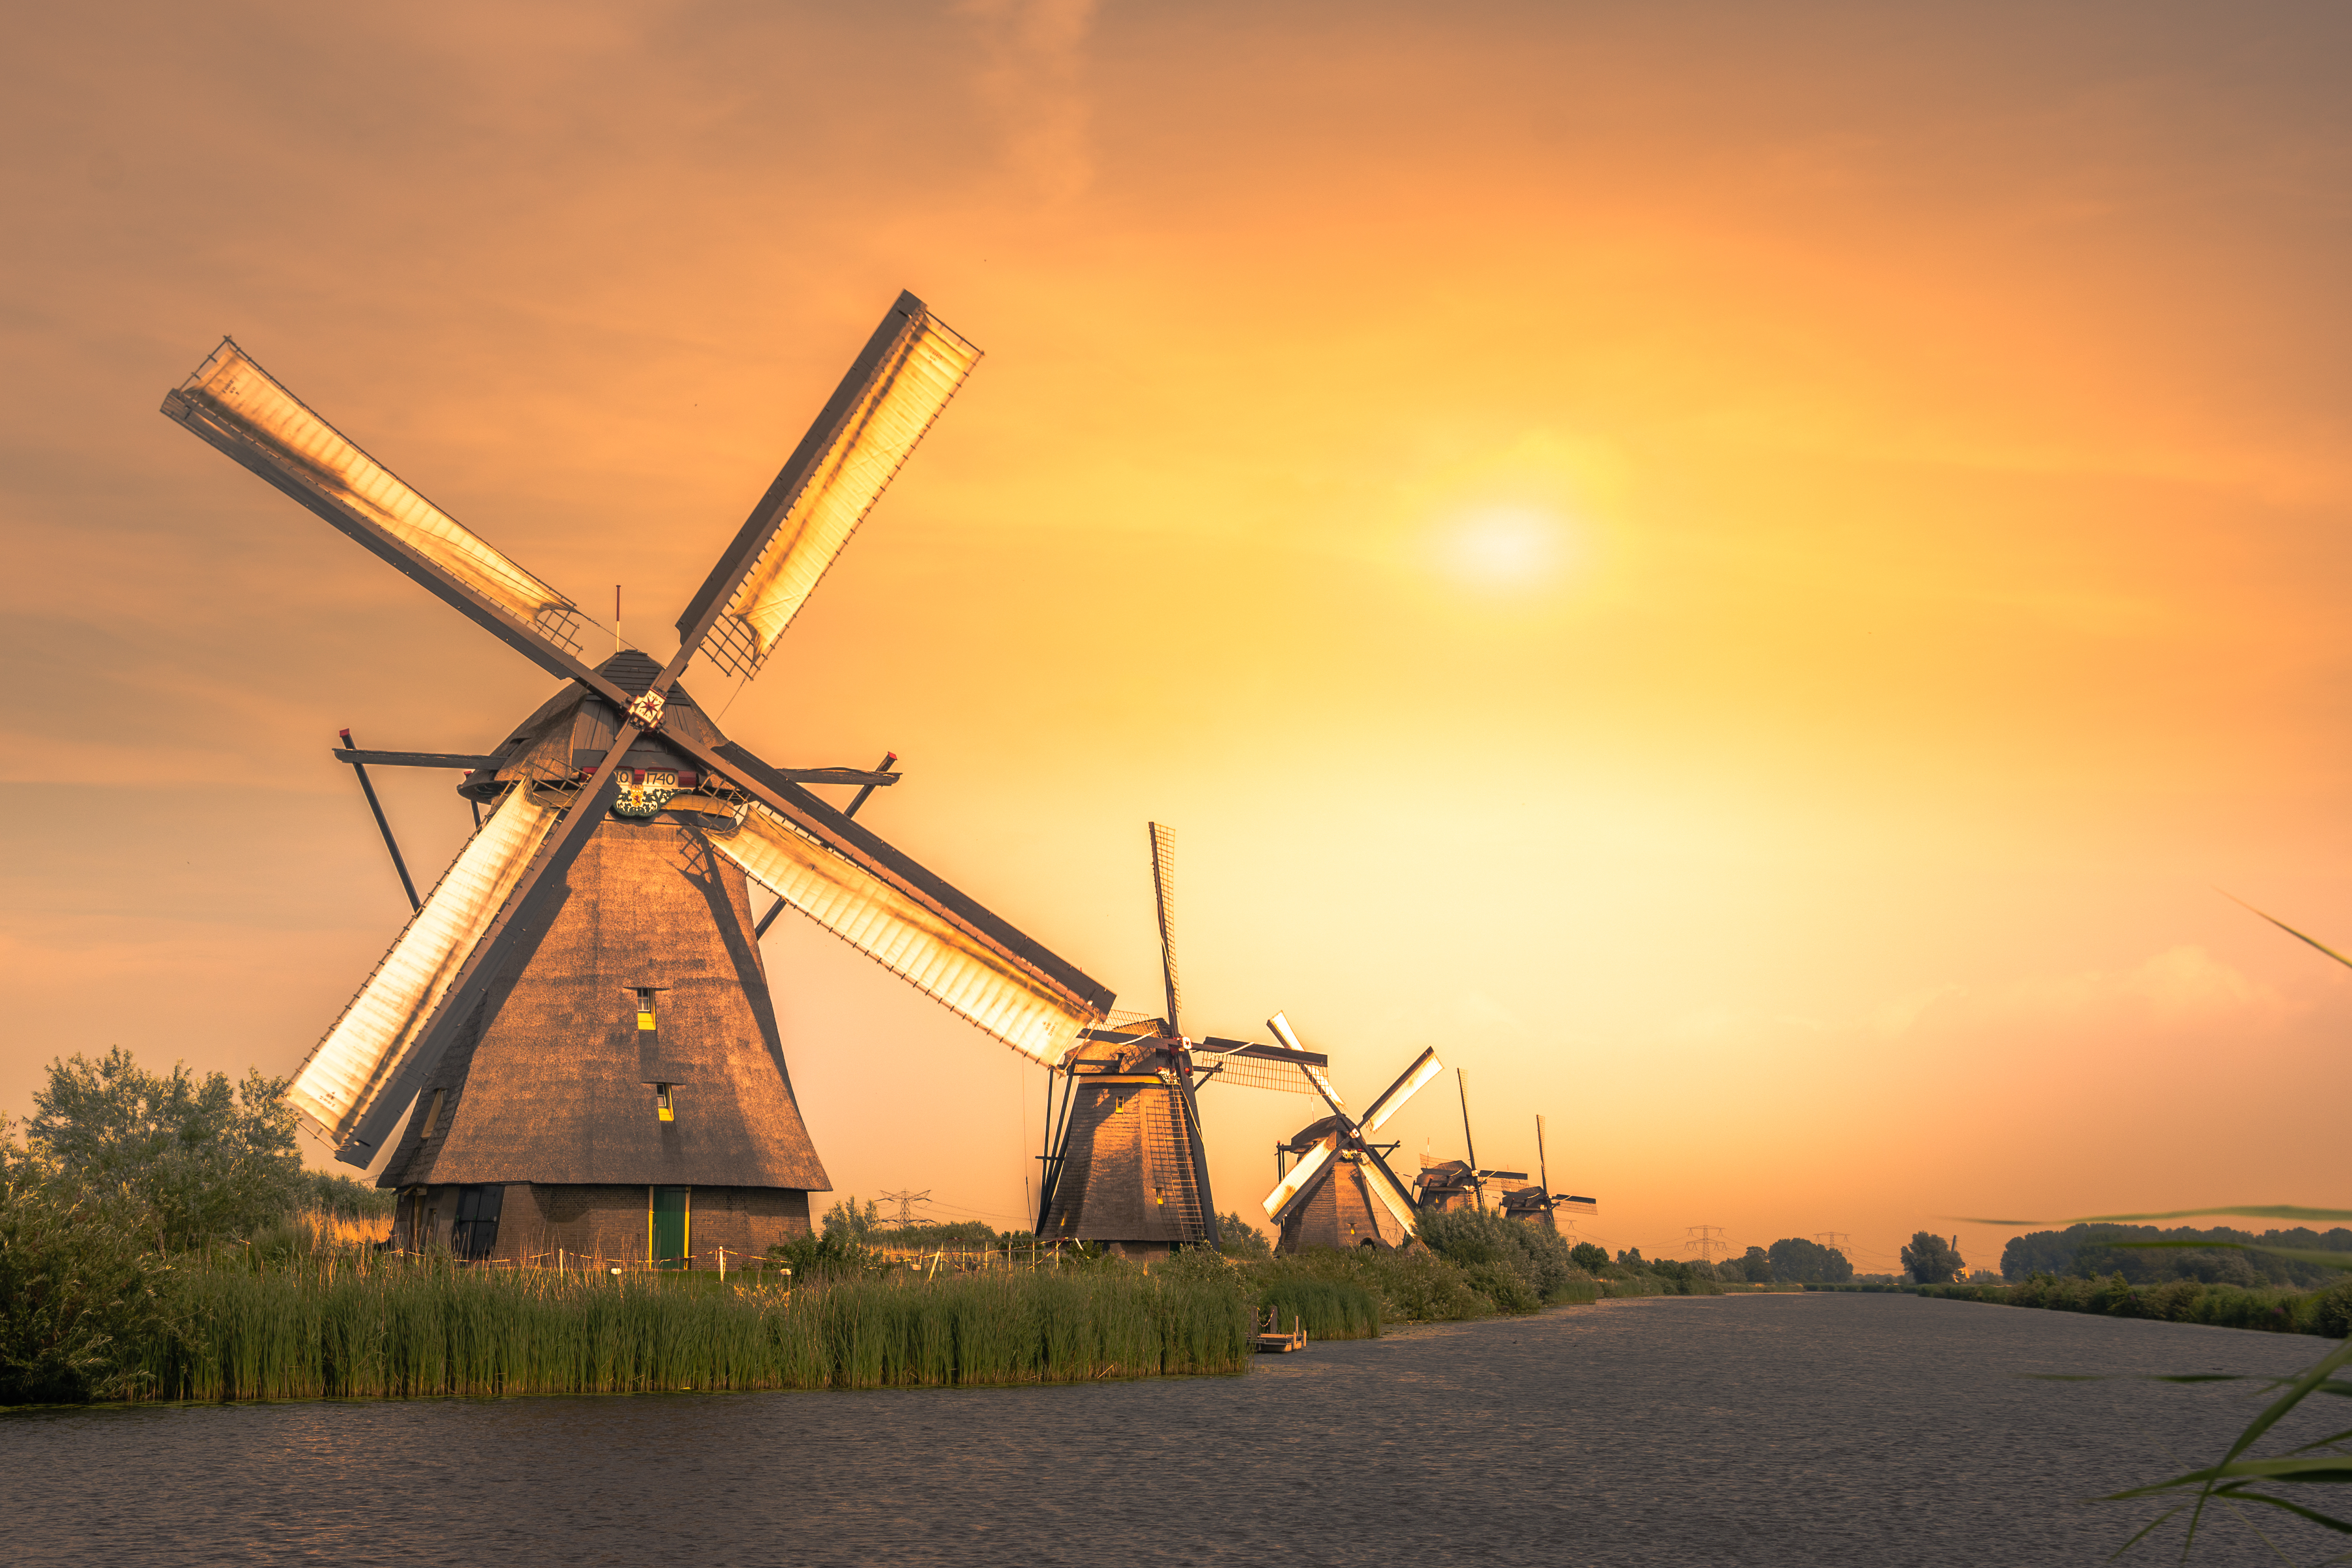 Dutch windmills in Netherlands